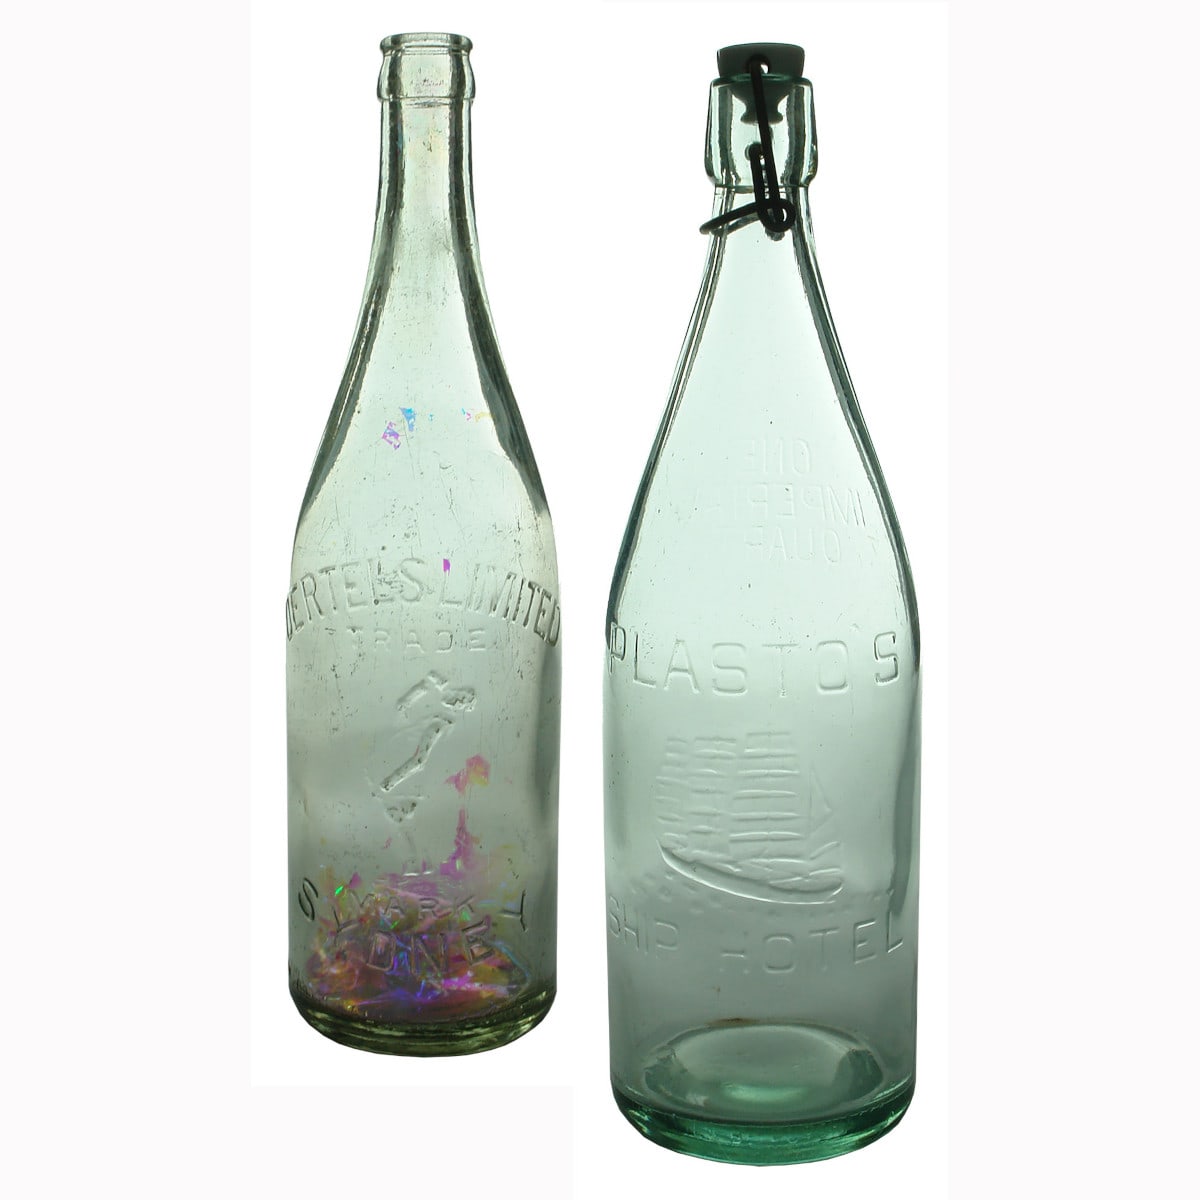 Pair of Sydney Bottles: Oertels & Plasto's.